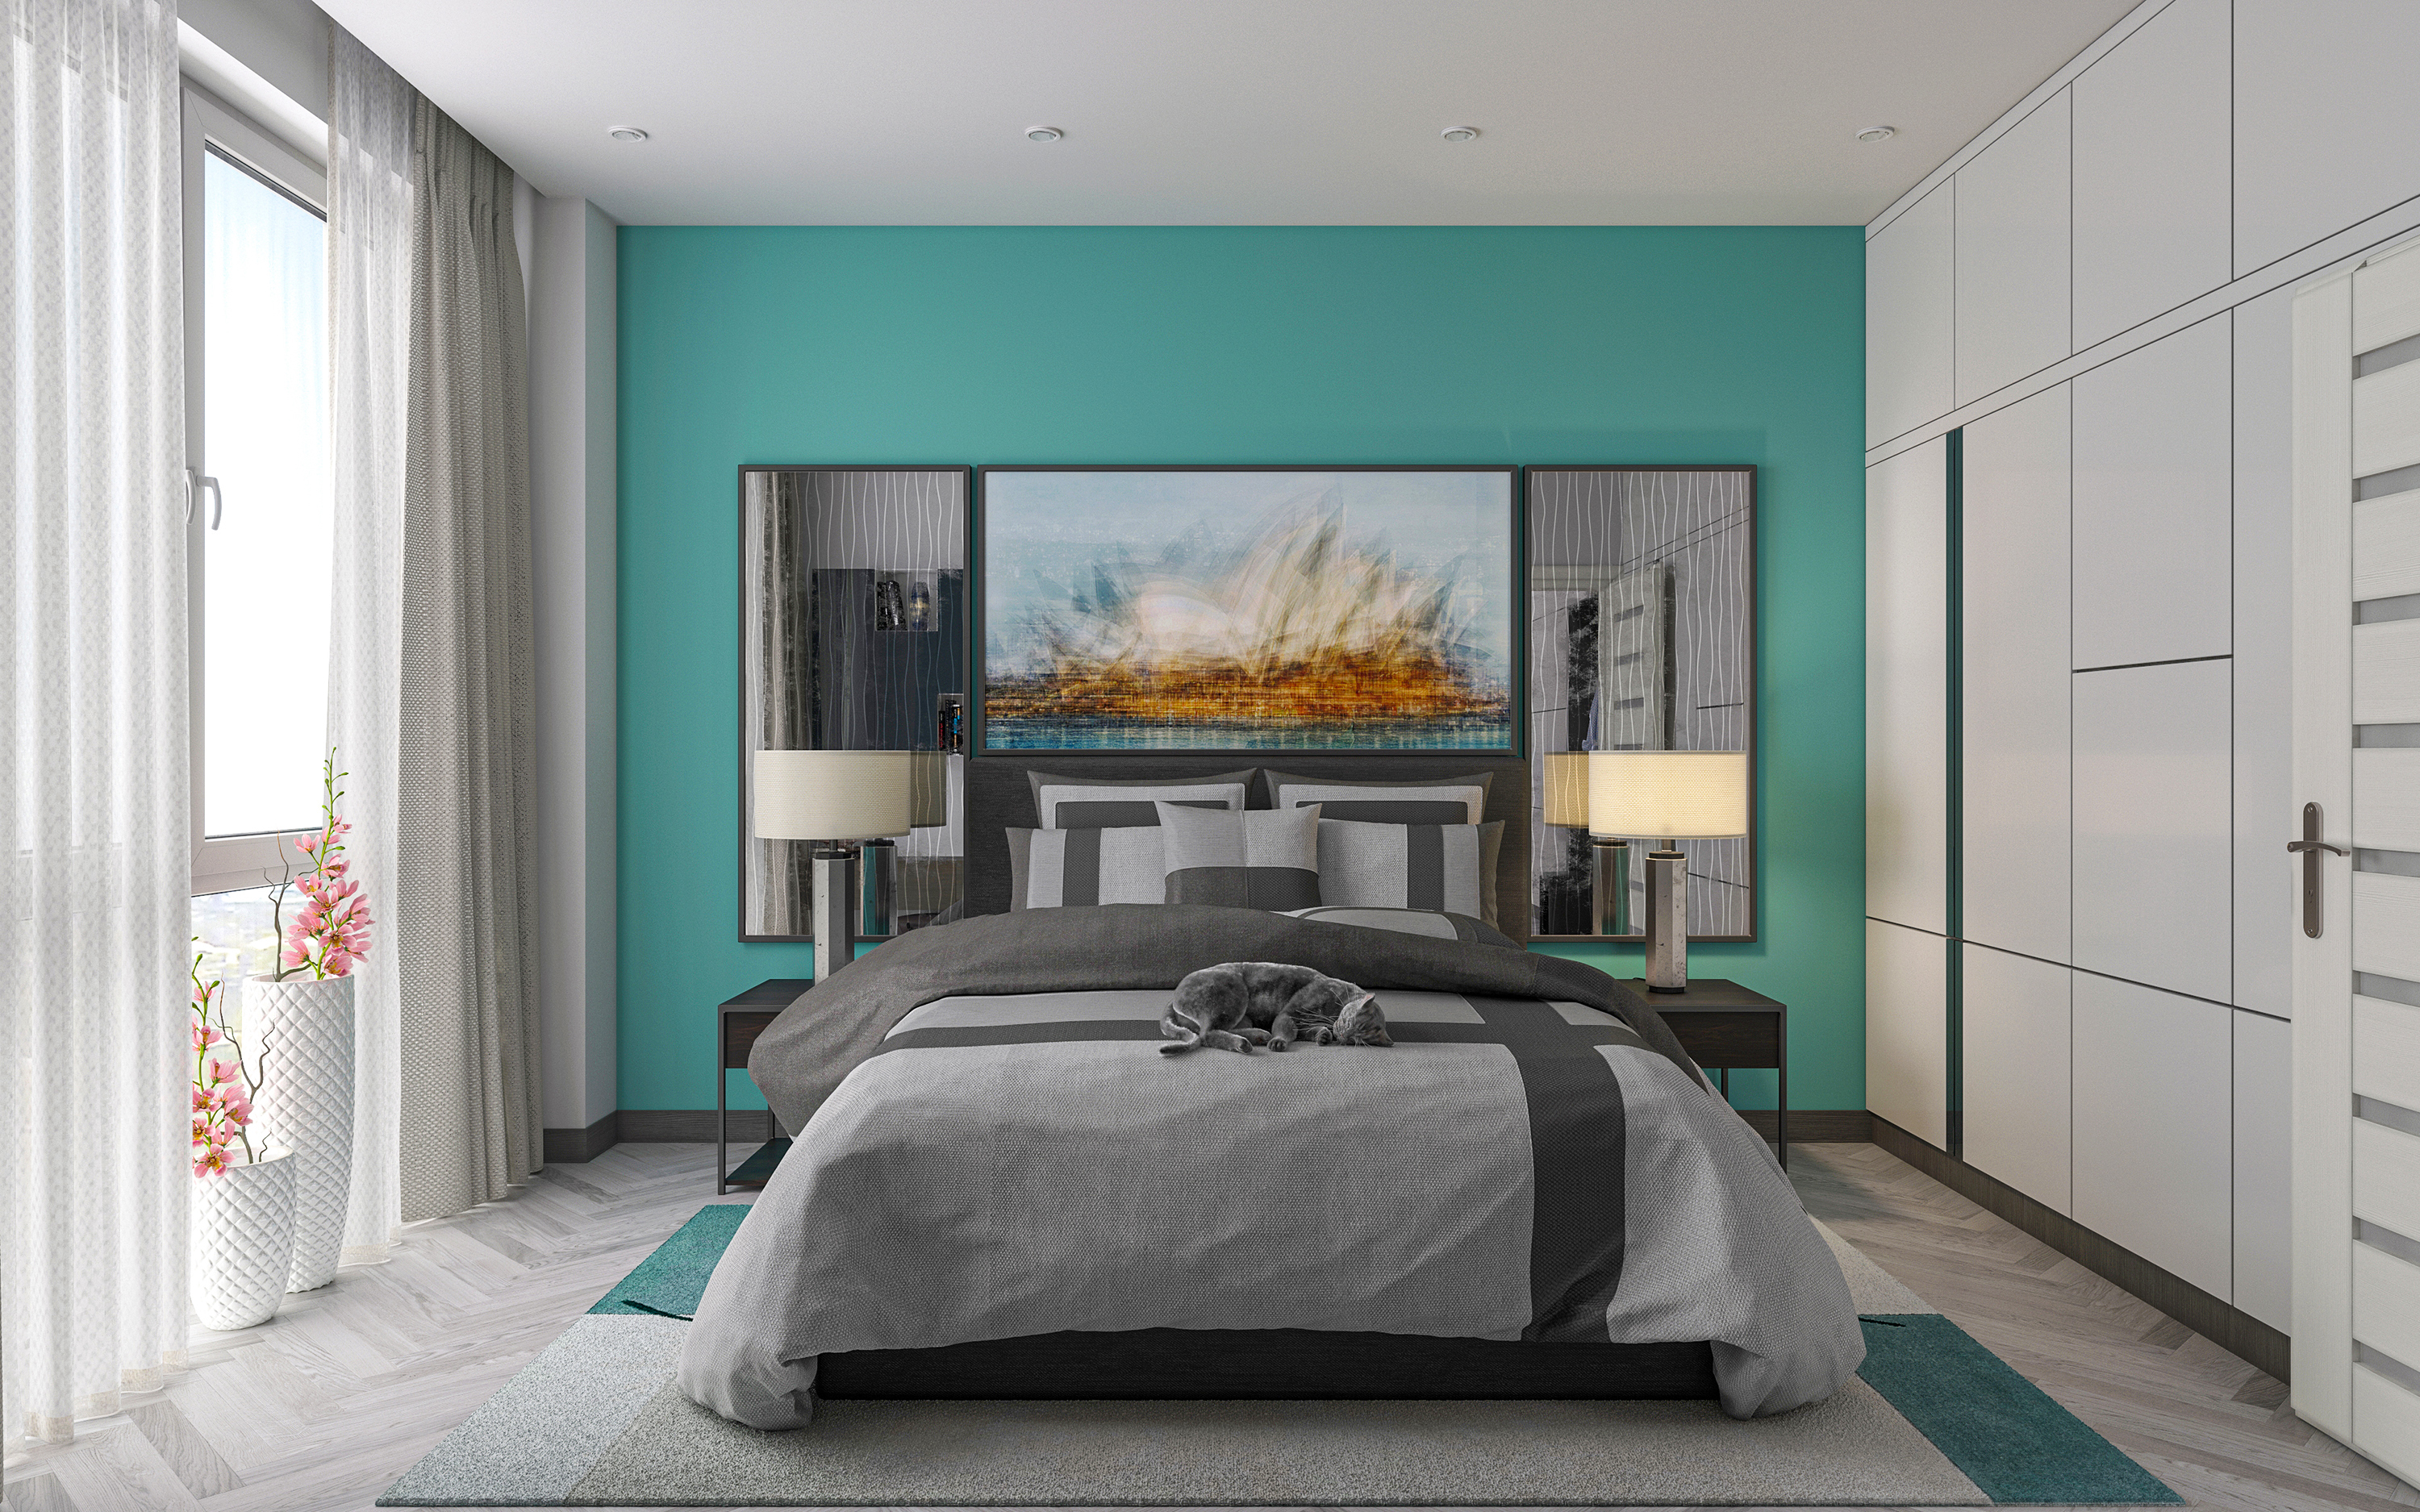 imagen de Apartamento de una habitación S66 en 3d max corona render